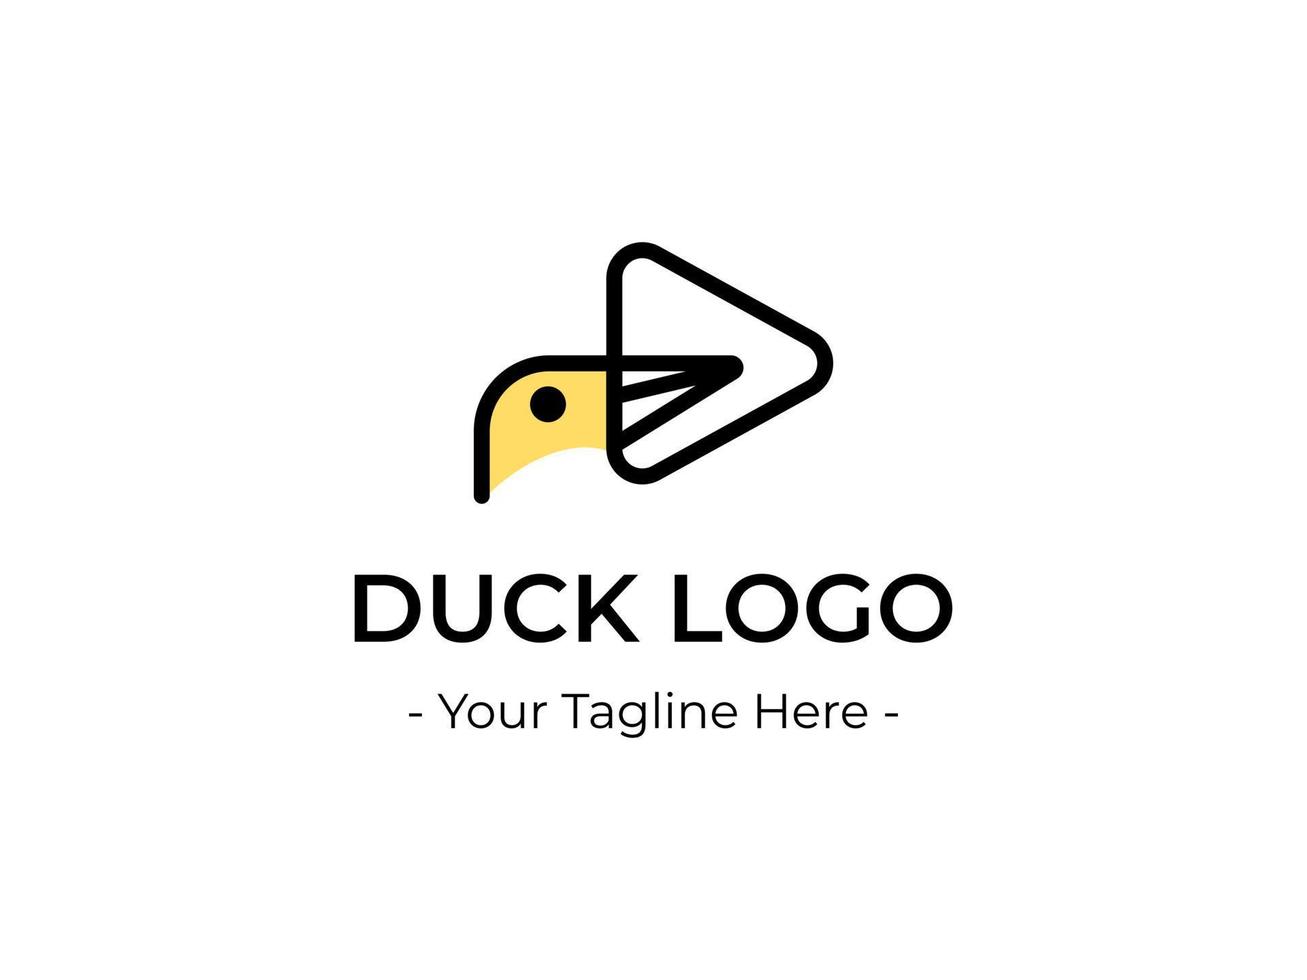 Anka huvud logotyp design med en triangel- näbb, perfekt för en minimalistisk företag eller mat uppfödare logotyp referens vektor